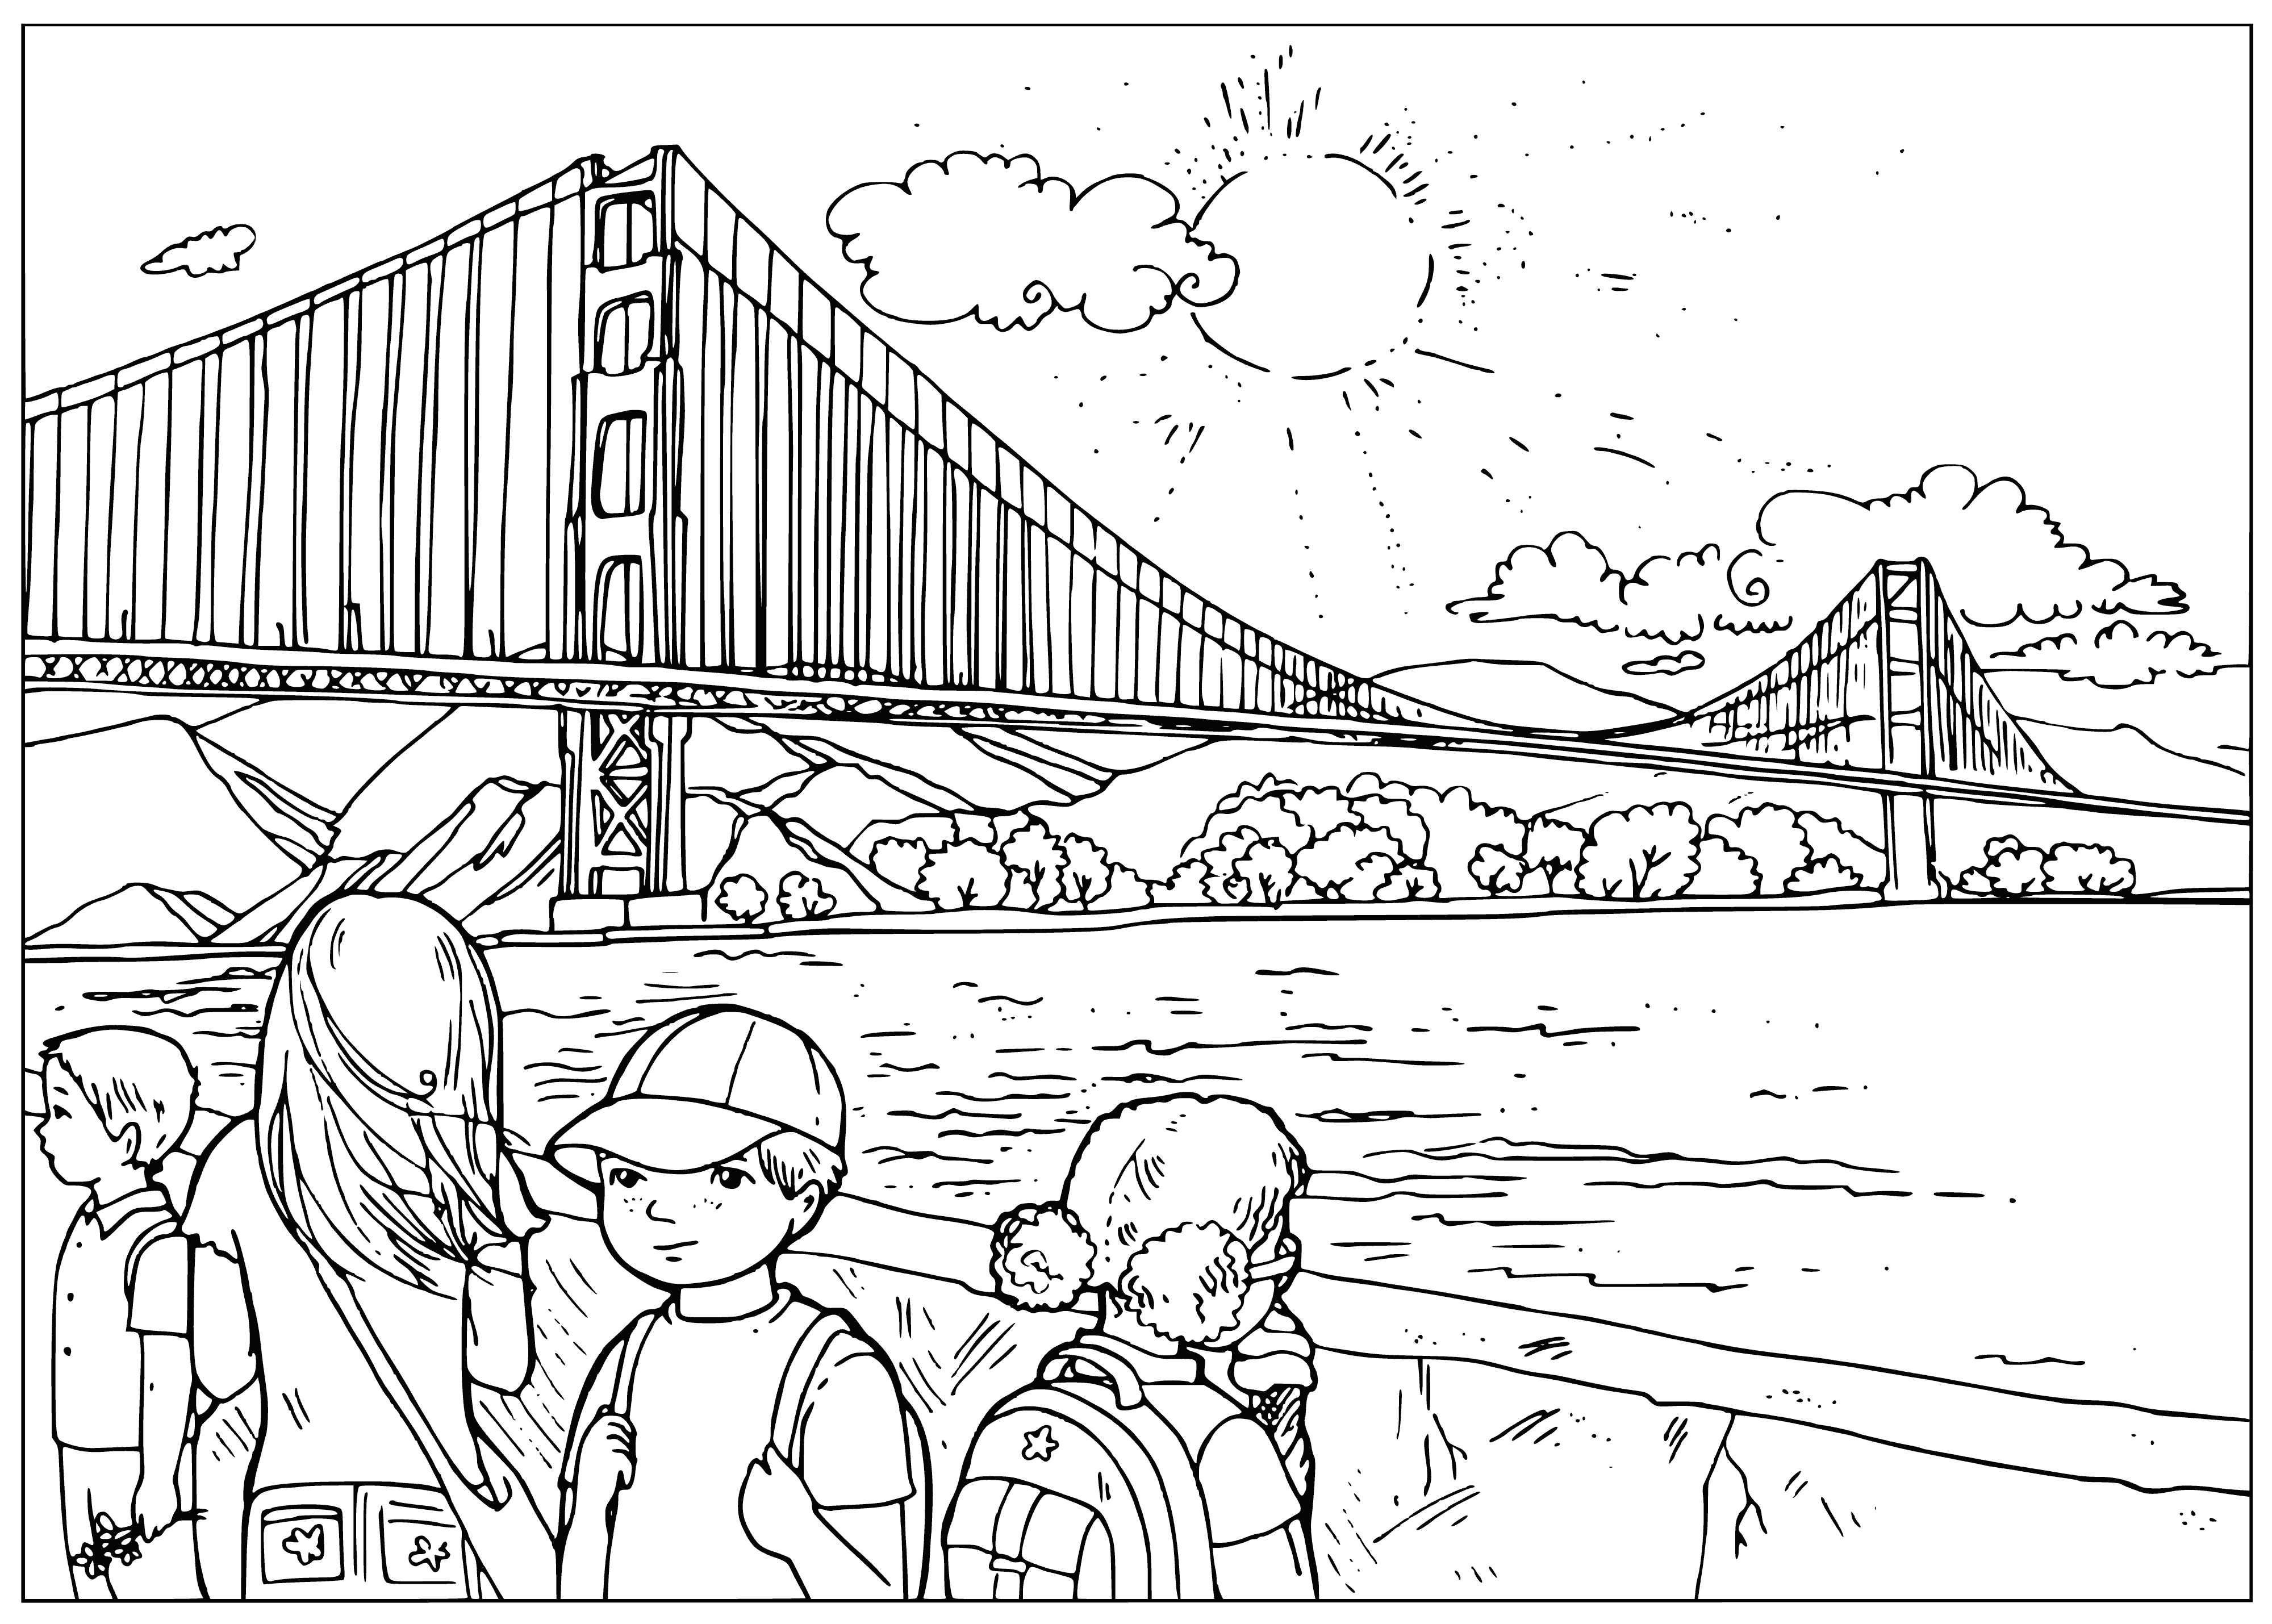 Golden Gate-brug in San Francisco. VSA inkleurbladsy